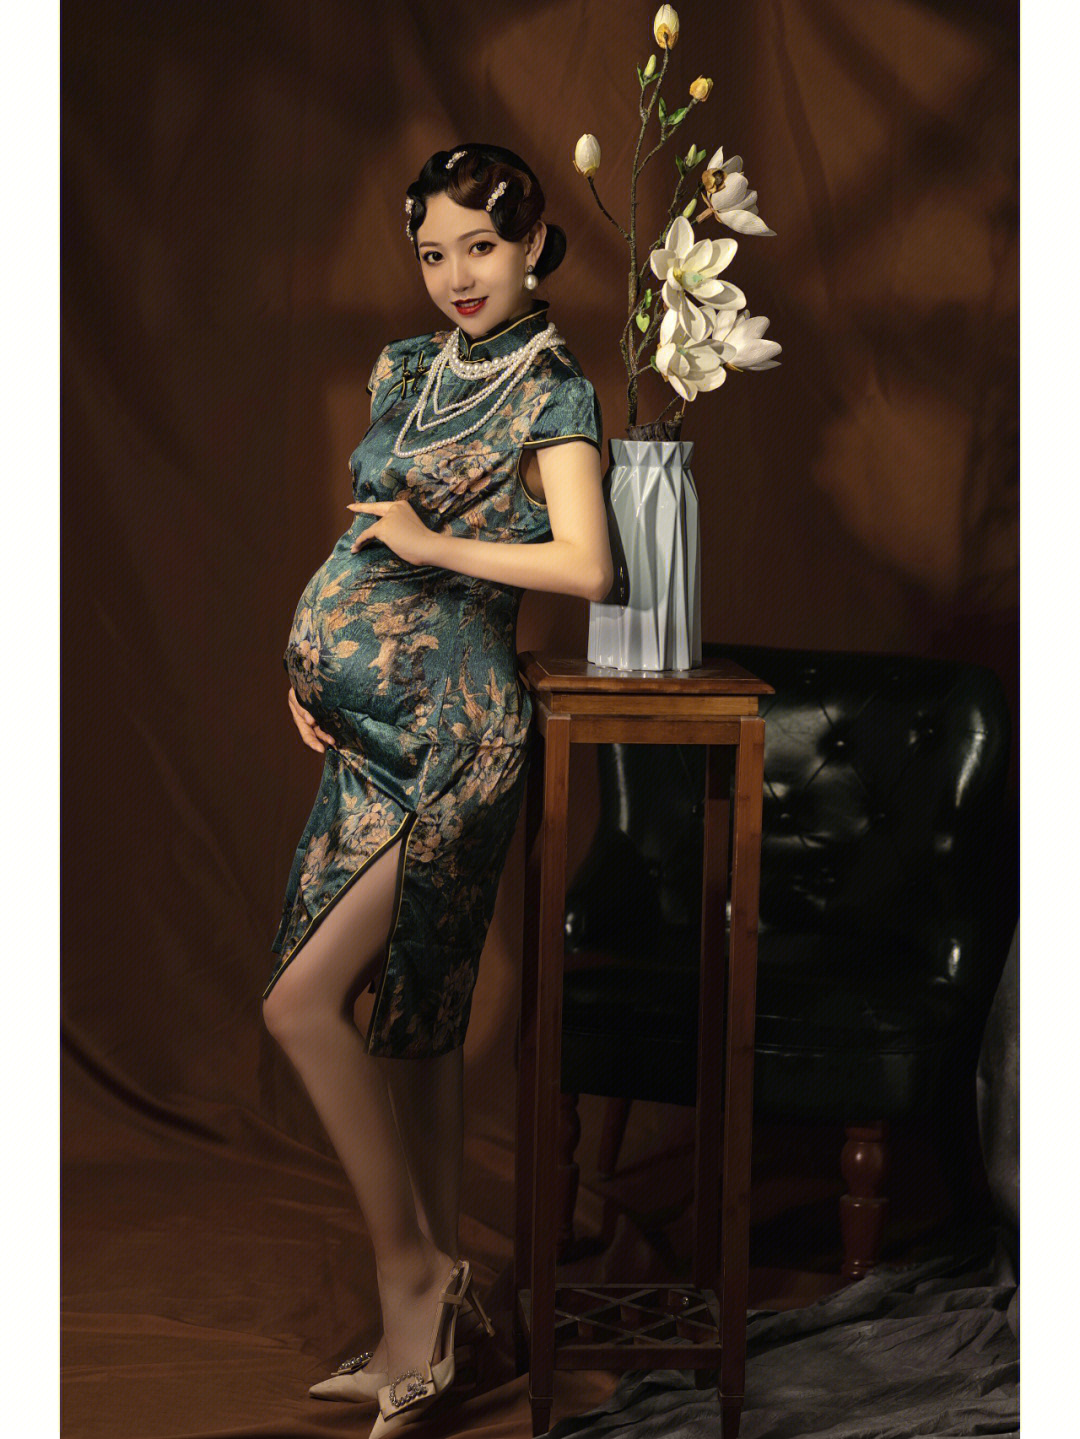 孕妇拍照写真服装印花旗袍孕妇摄影礼服中国风古装影楼孕妇照服装-阿里巴巴